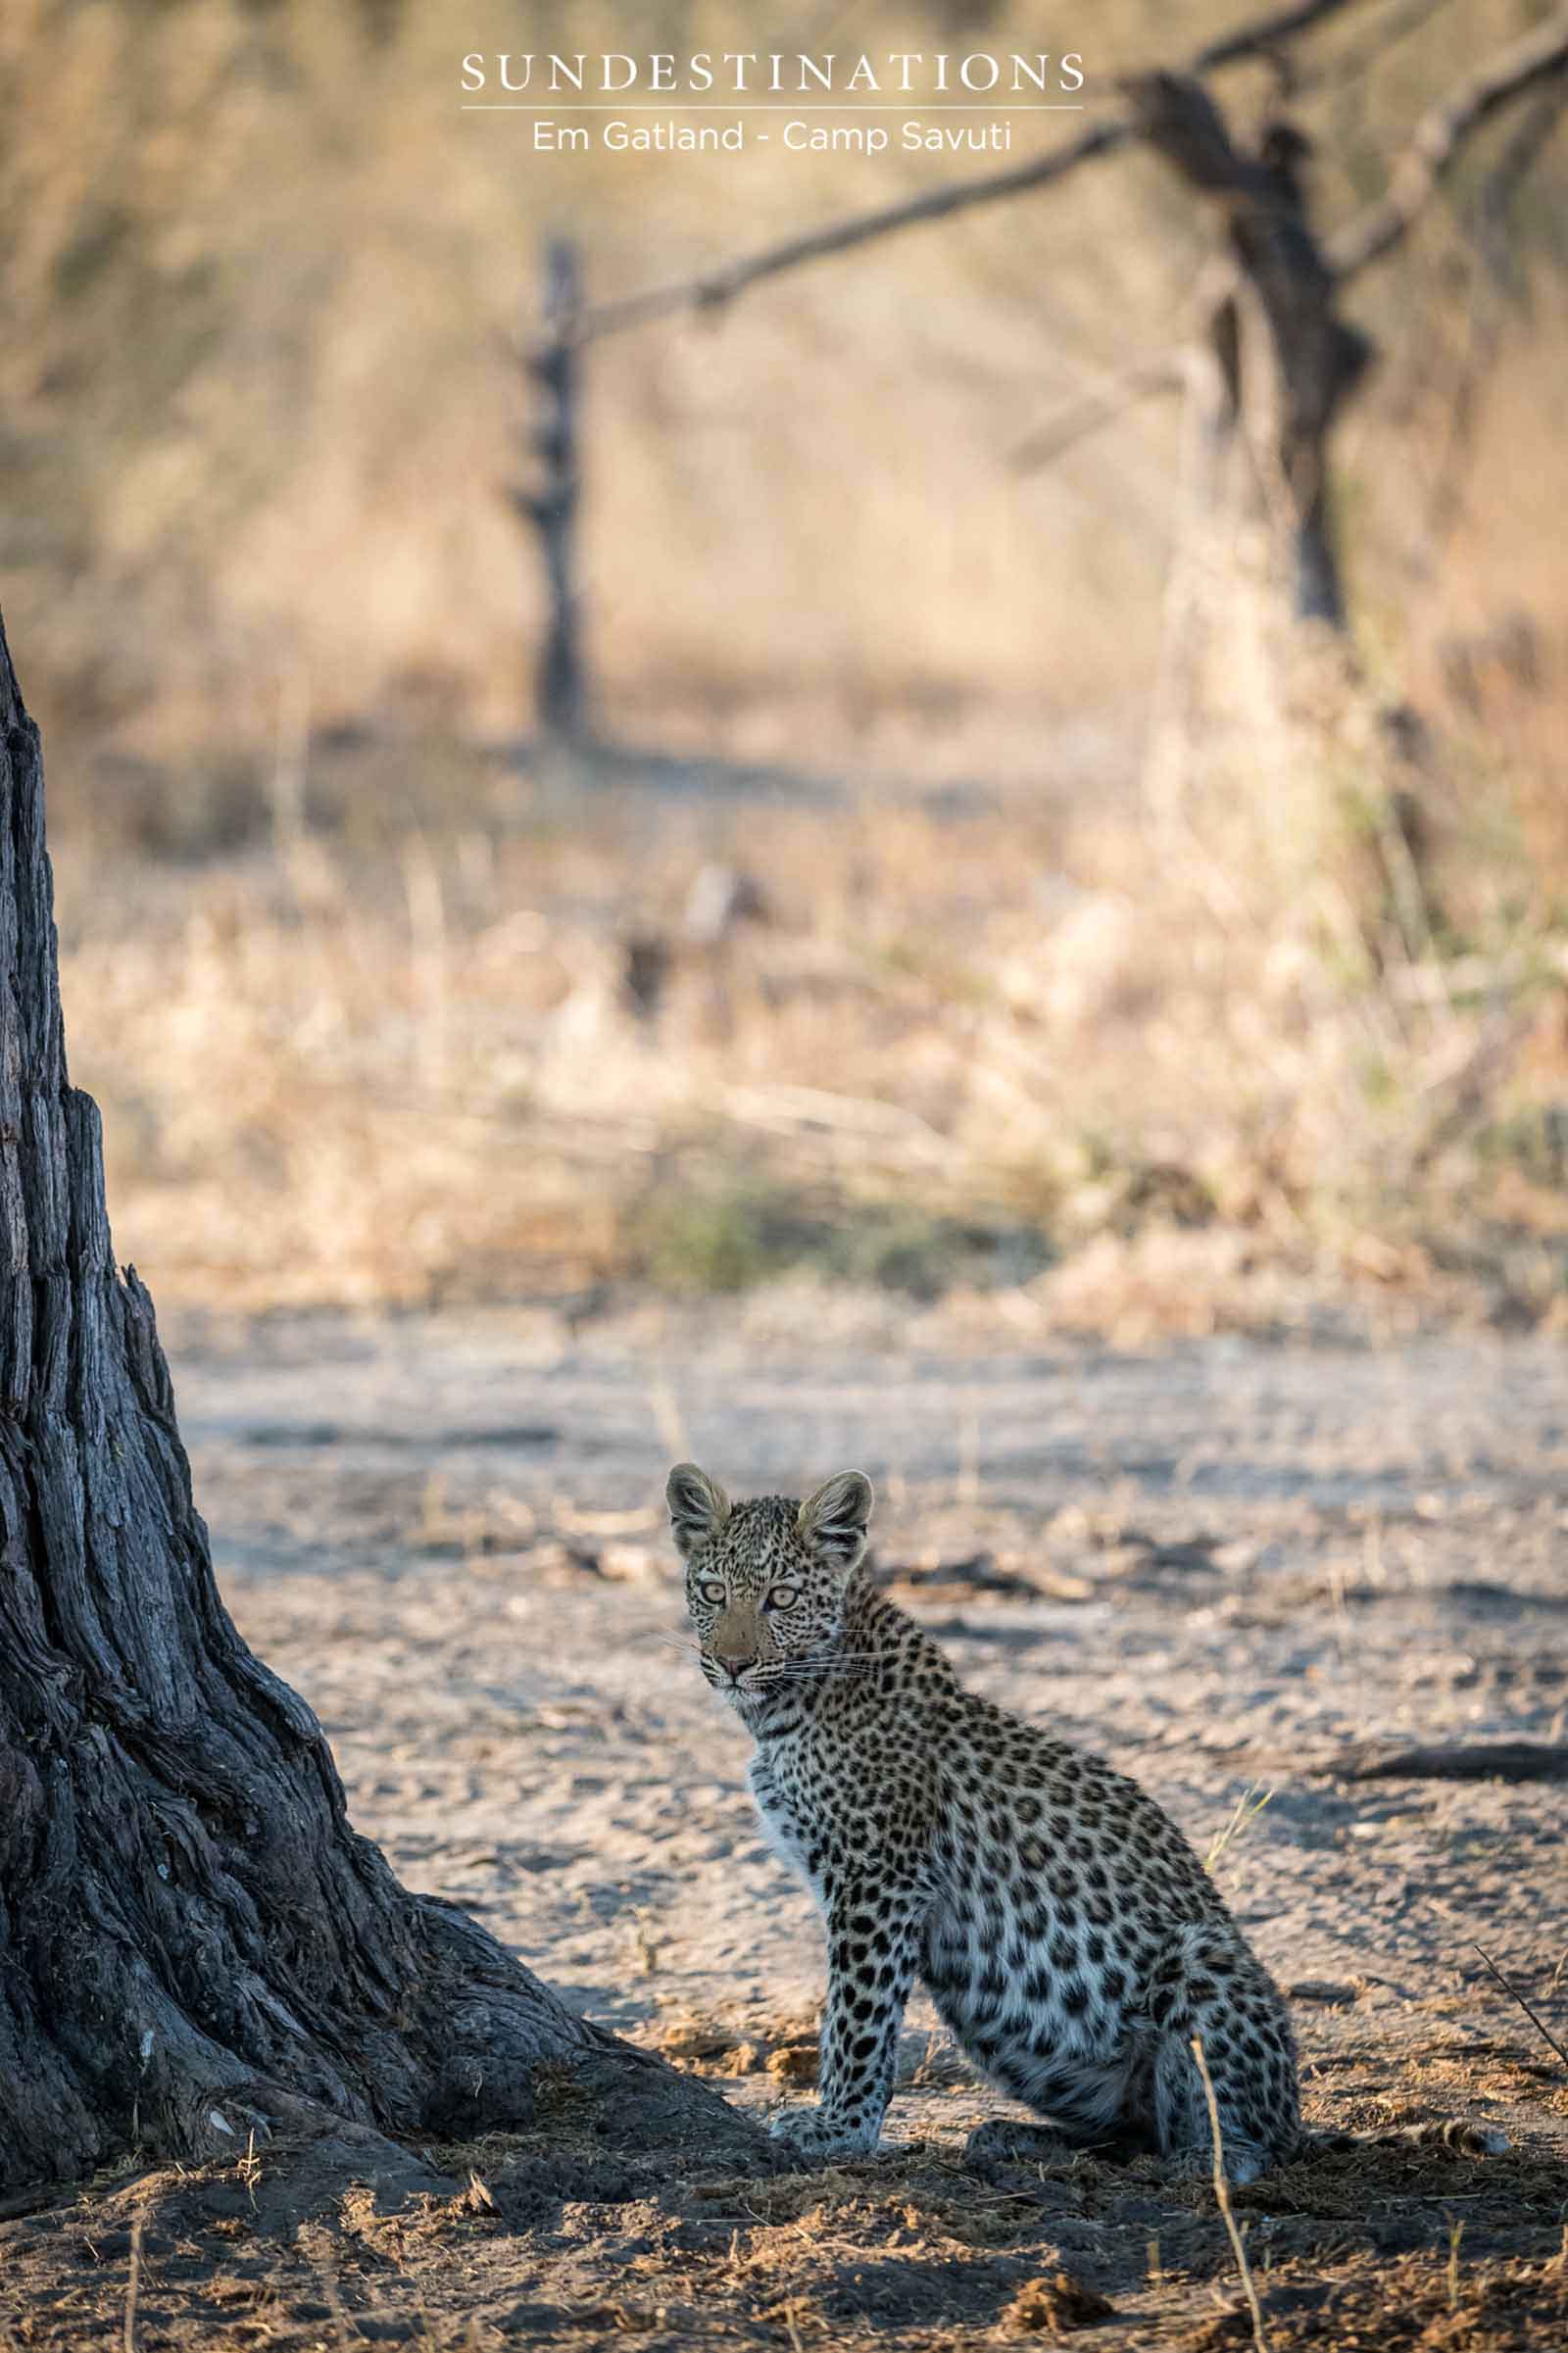 Portrait of a Leopard